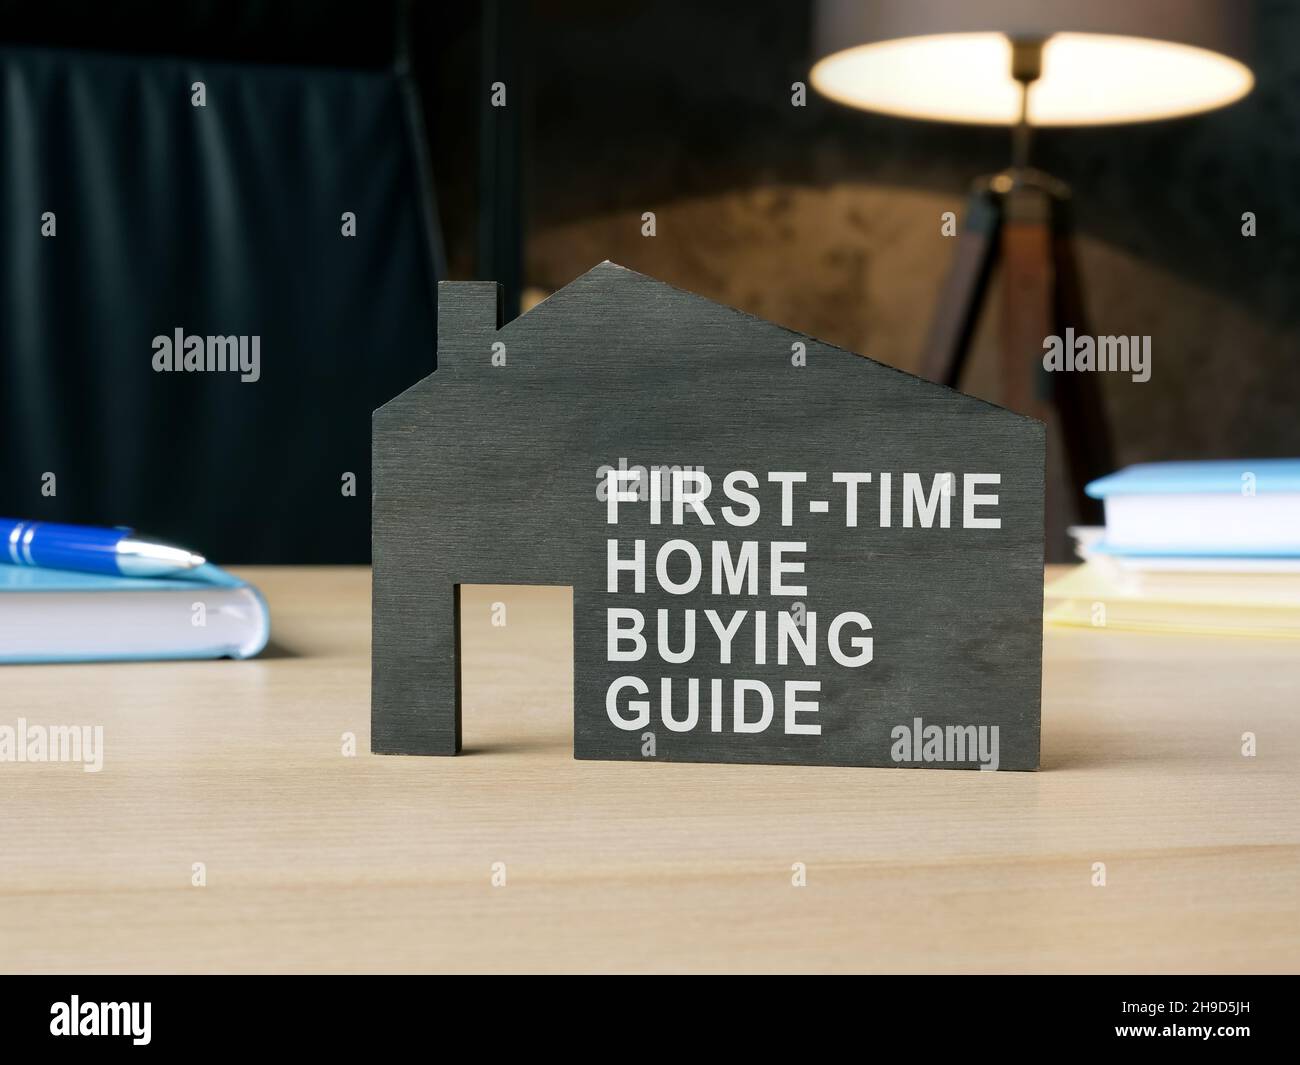 Dunkles Modell des Hauses mit Schild zum ersten Mal zu Hause kaufen Führer. Stockfoto